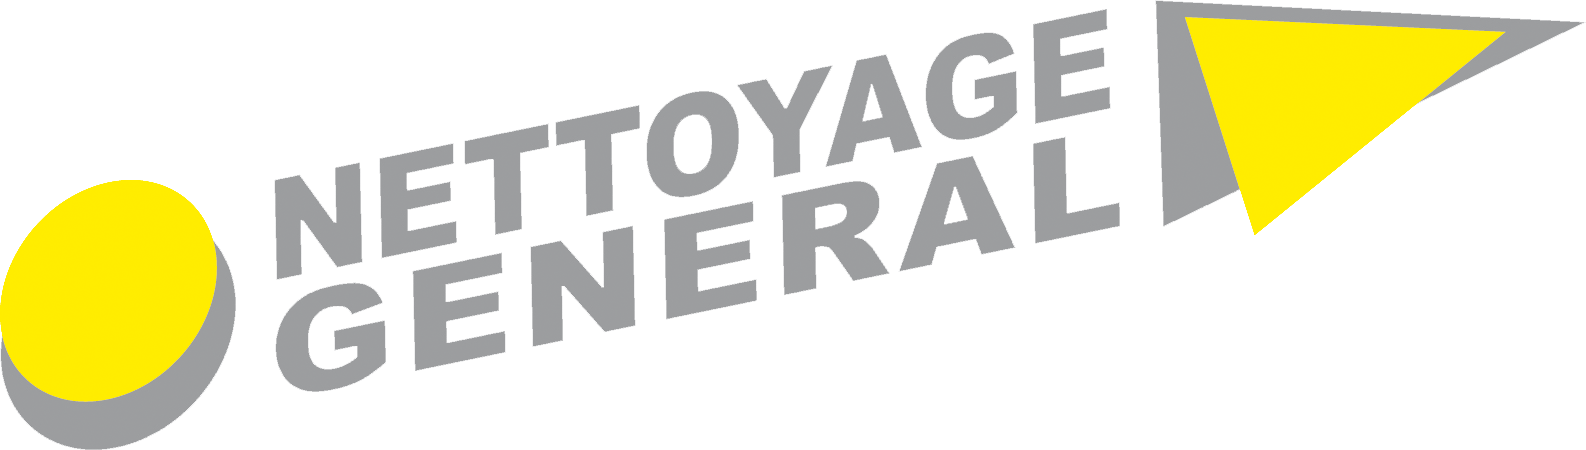 nettoyage-general-ajaccio-logo